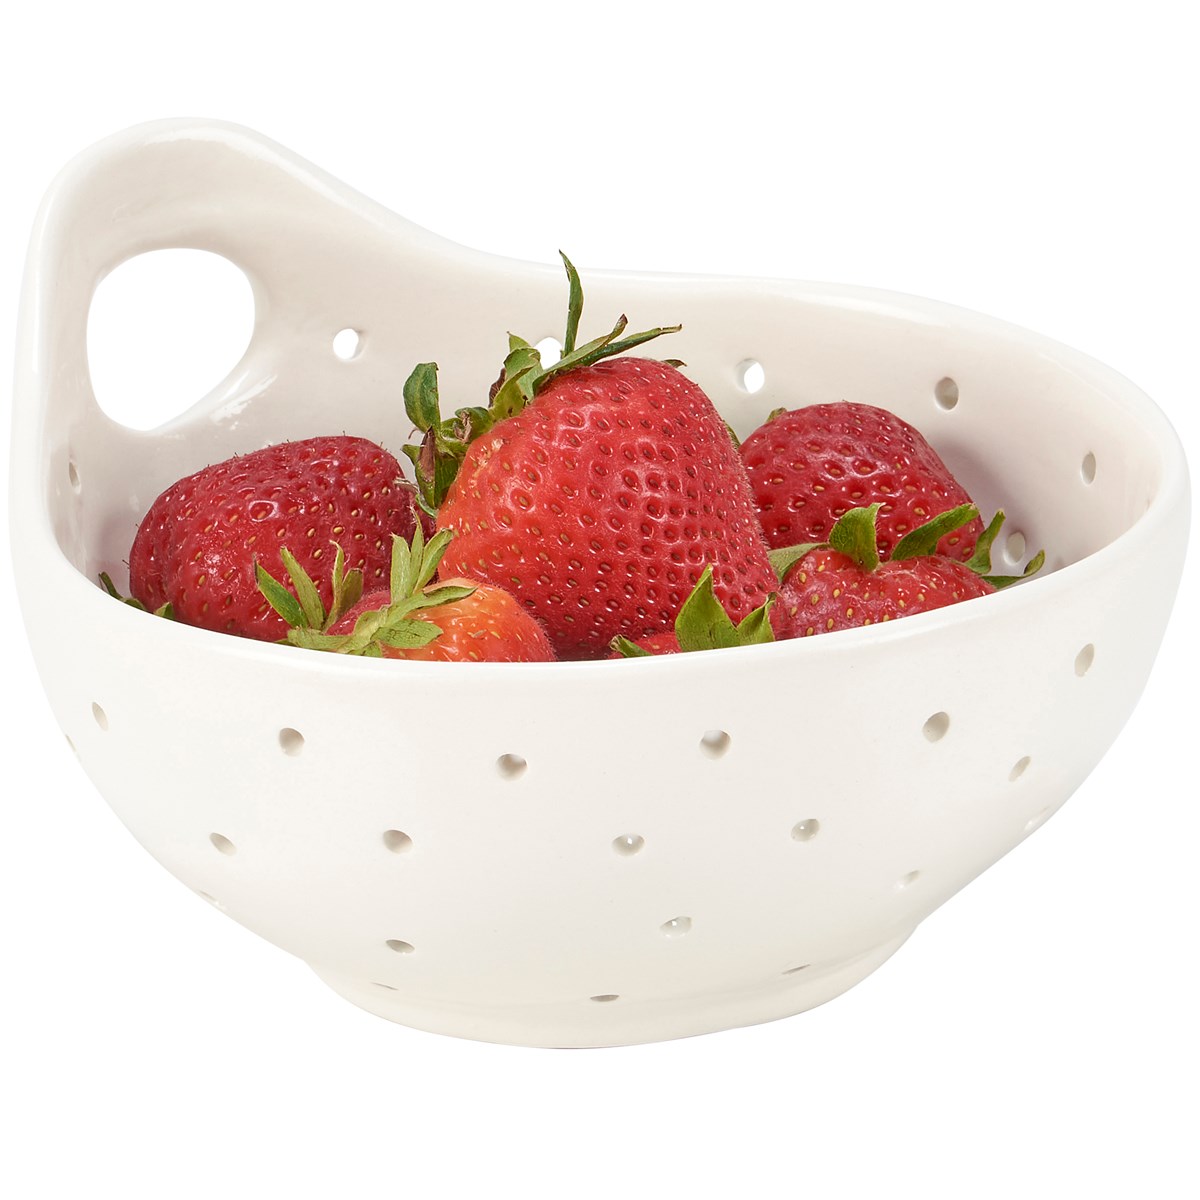 Farmhouse Berry Bowl - Stoneware